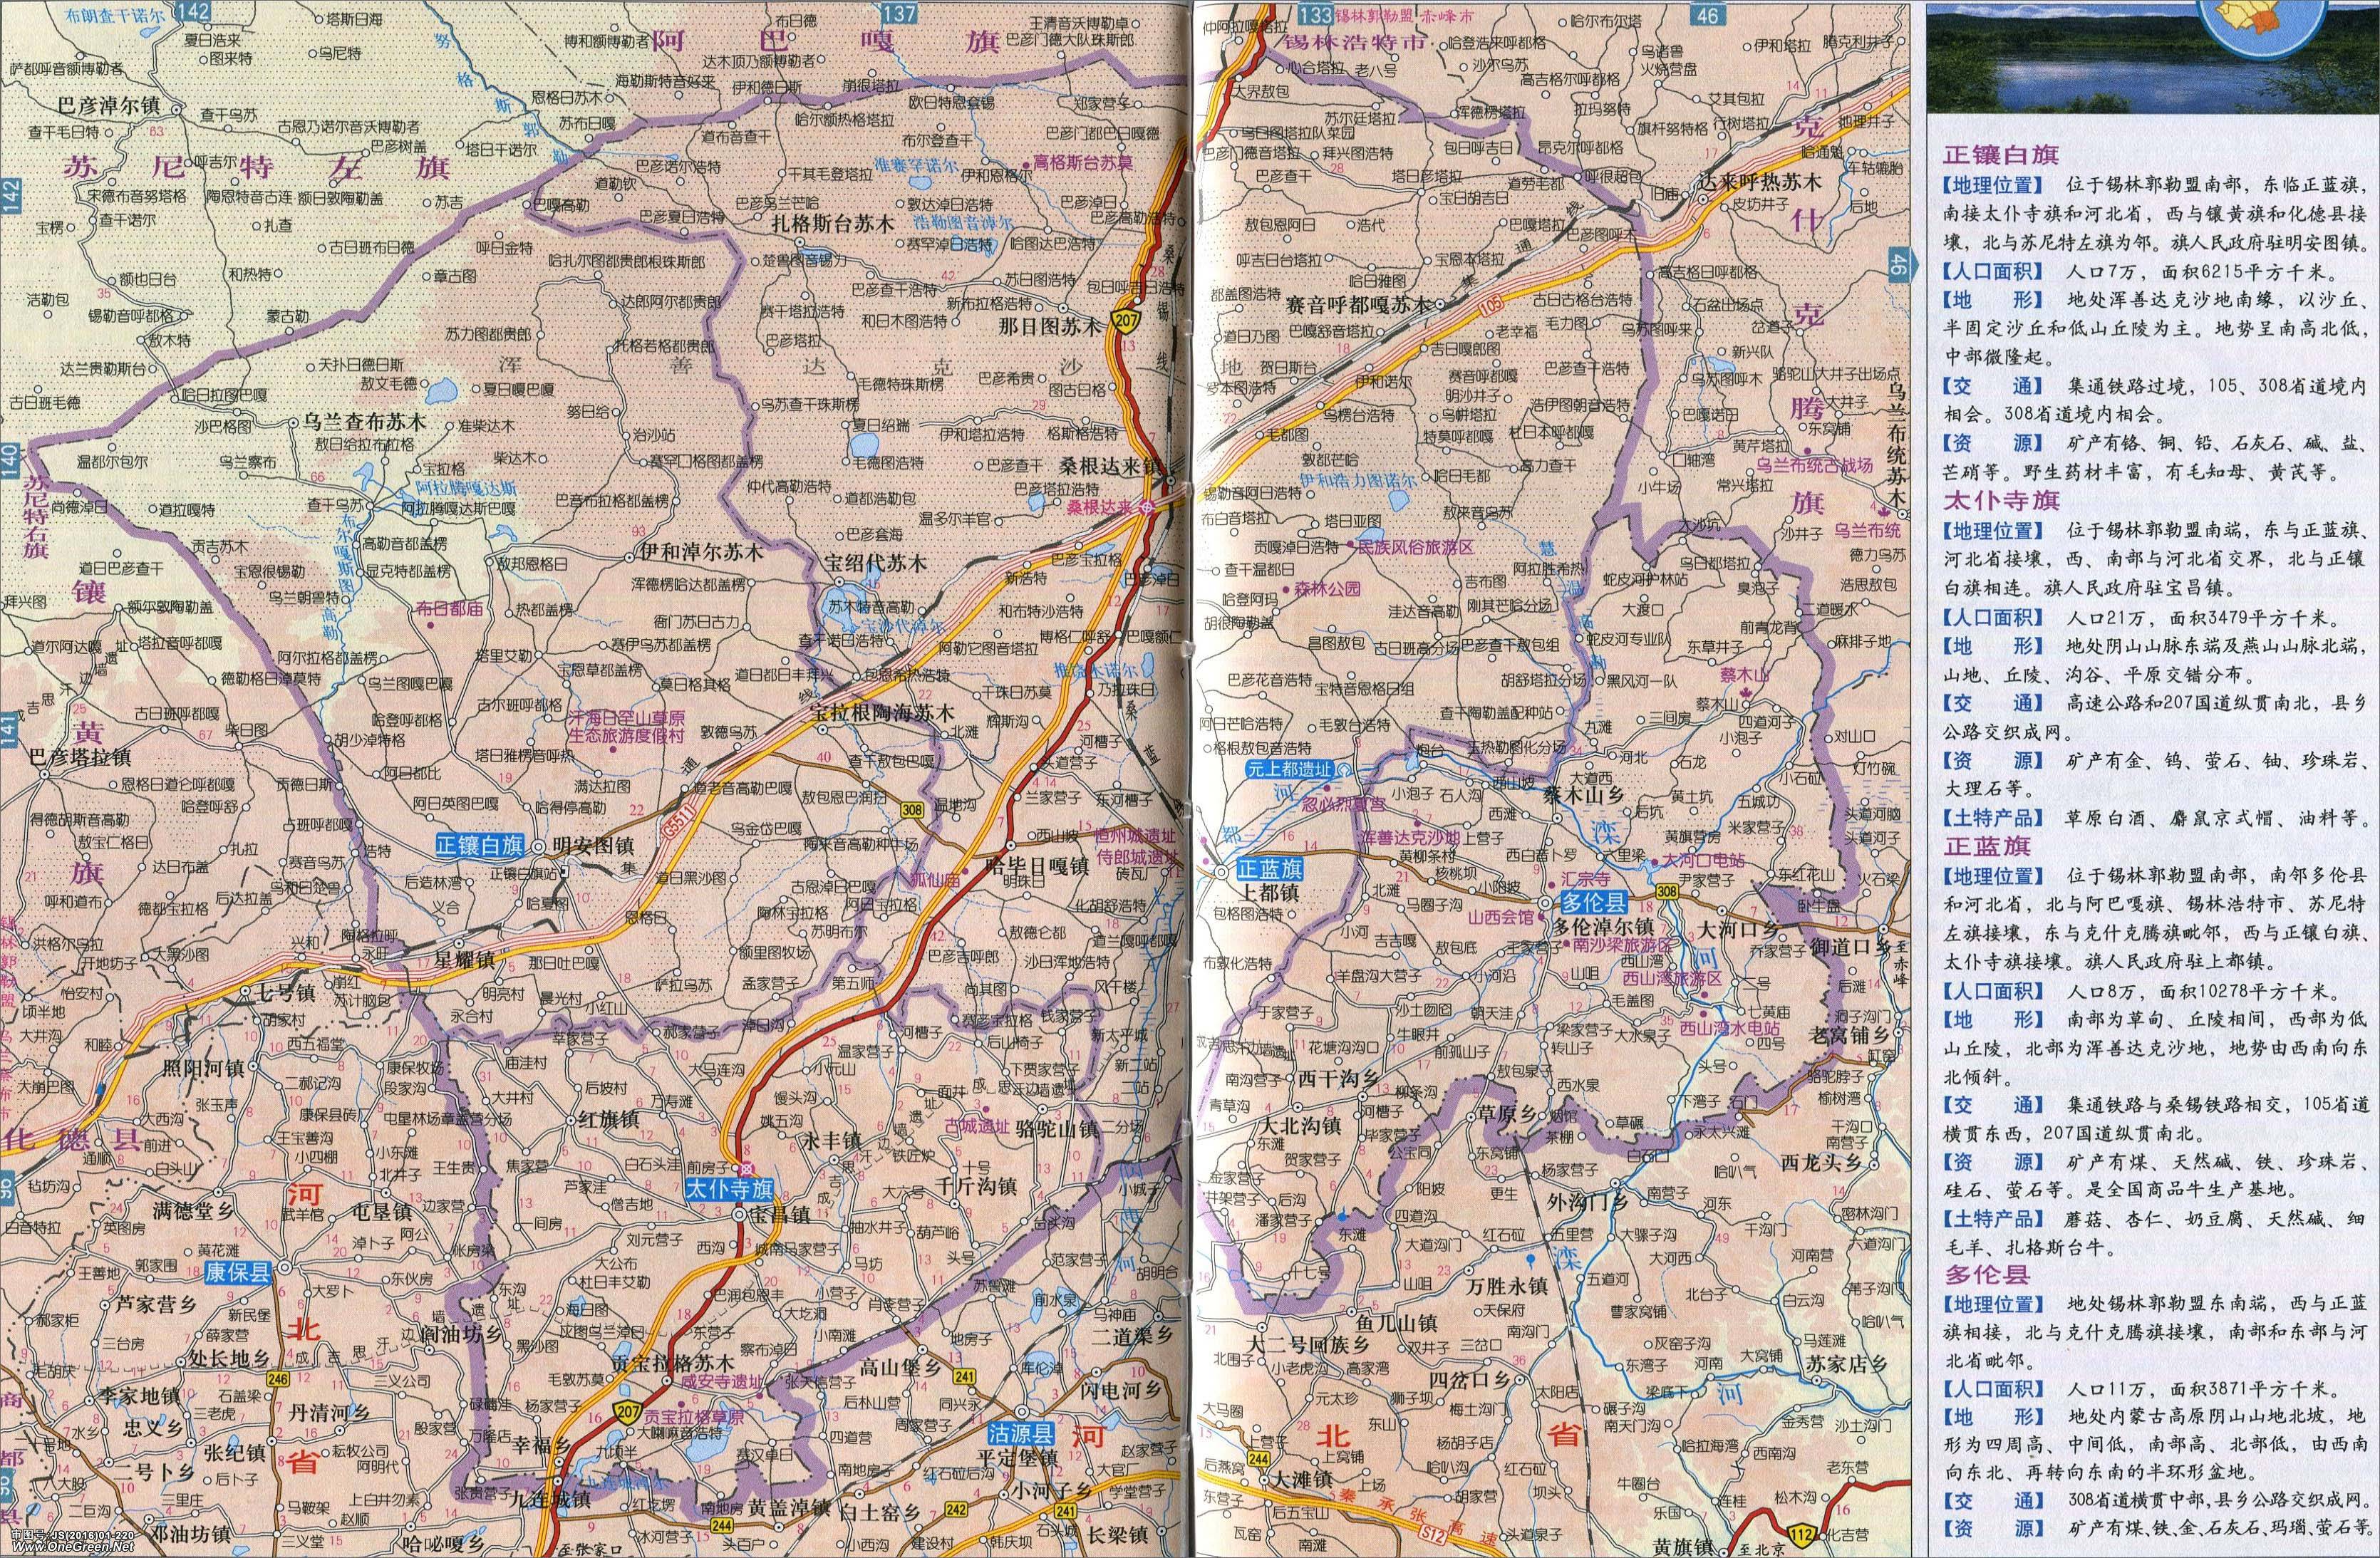 上一张地图: 锡林郭勒盟地图  | 锡林郭勒 |  下一张地图: 二连浩特市图片